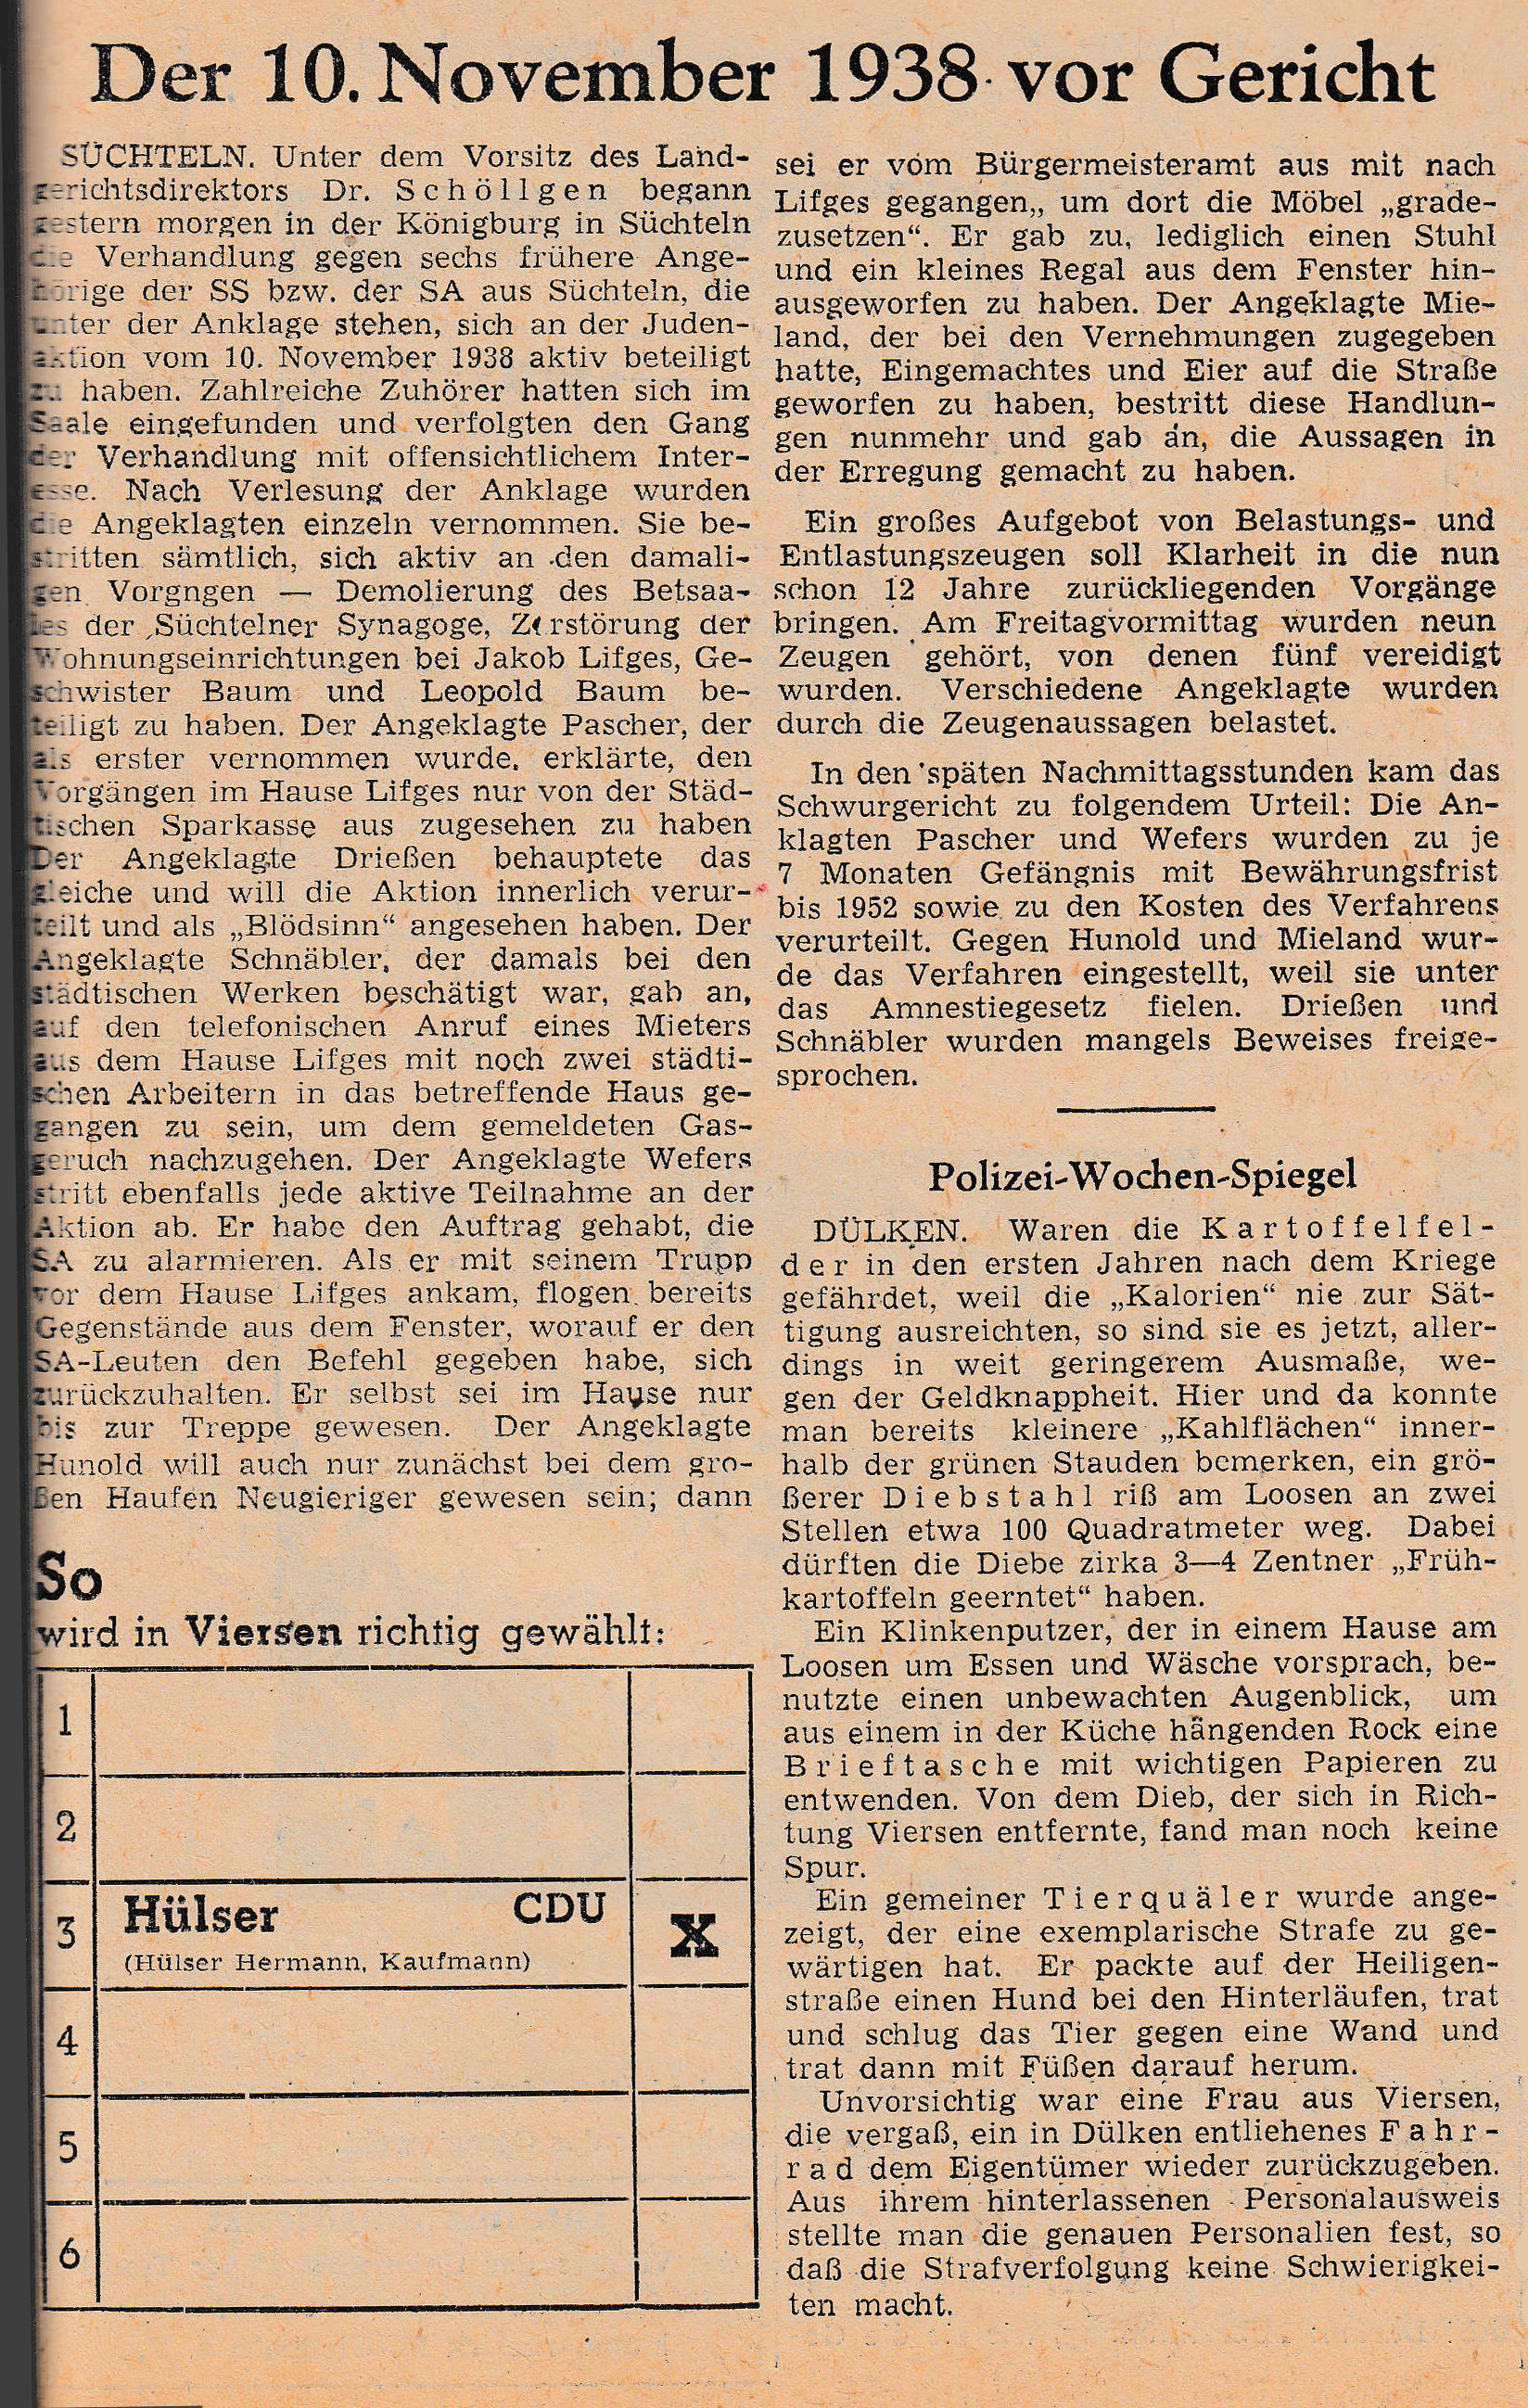 Zeitungsartikel zum Prozess in der Königsburg